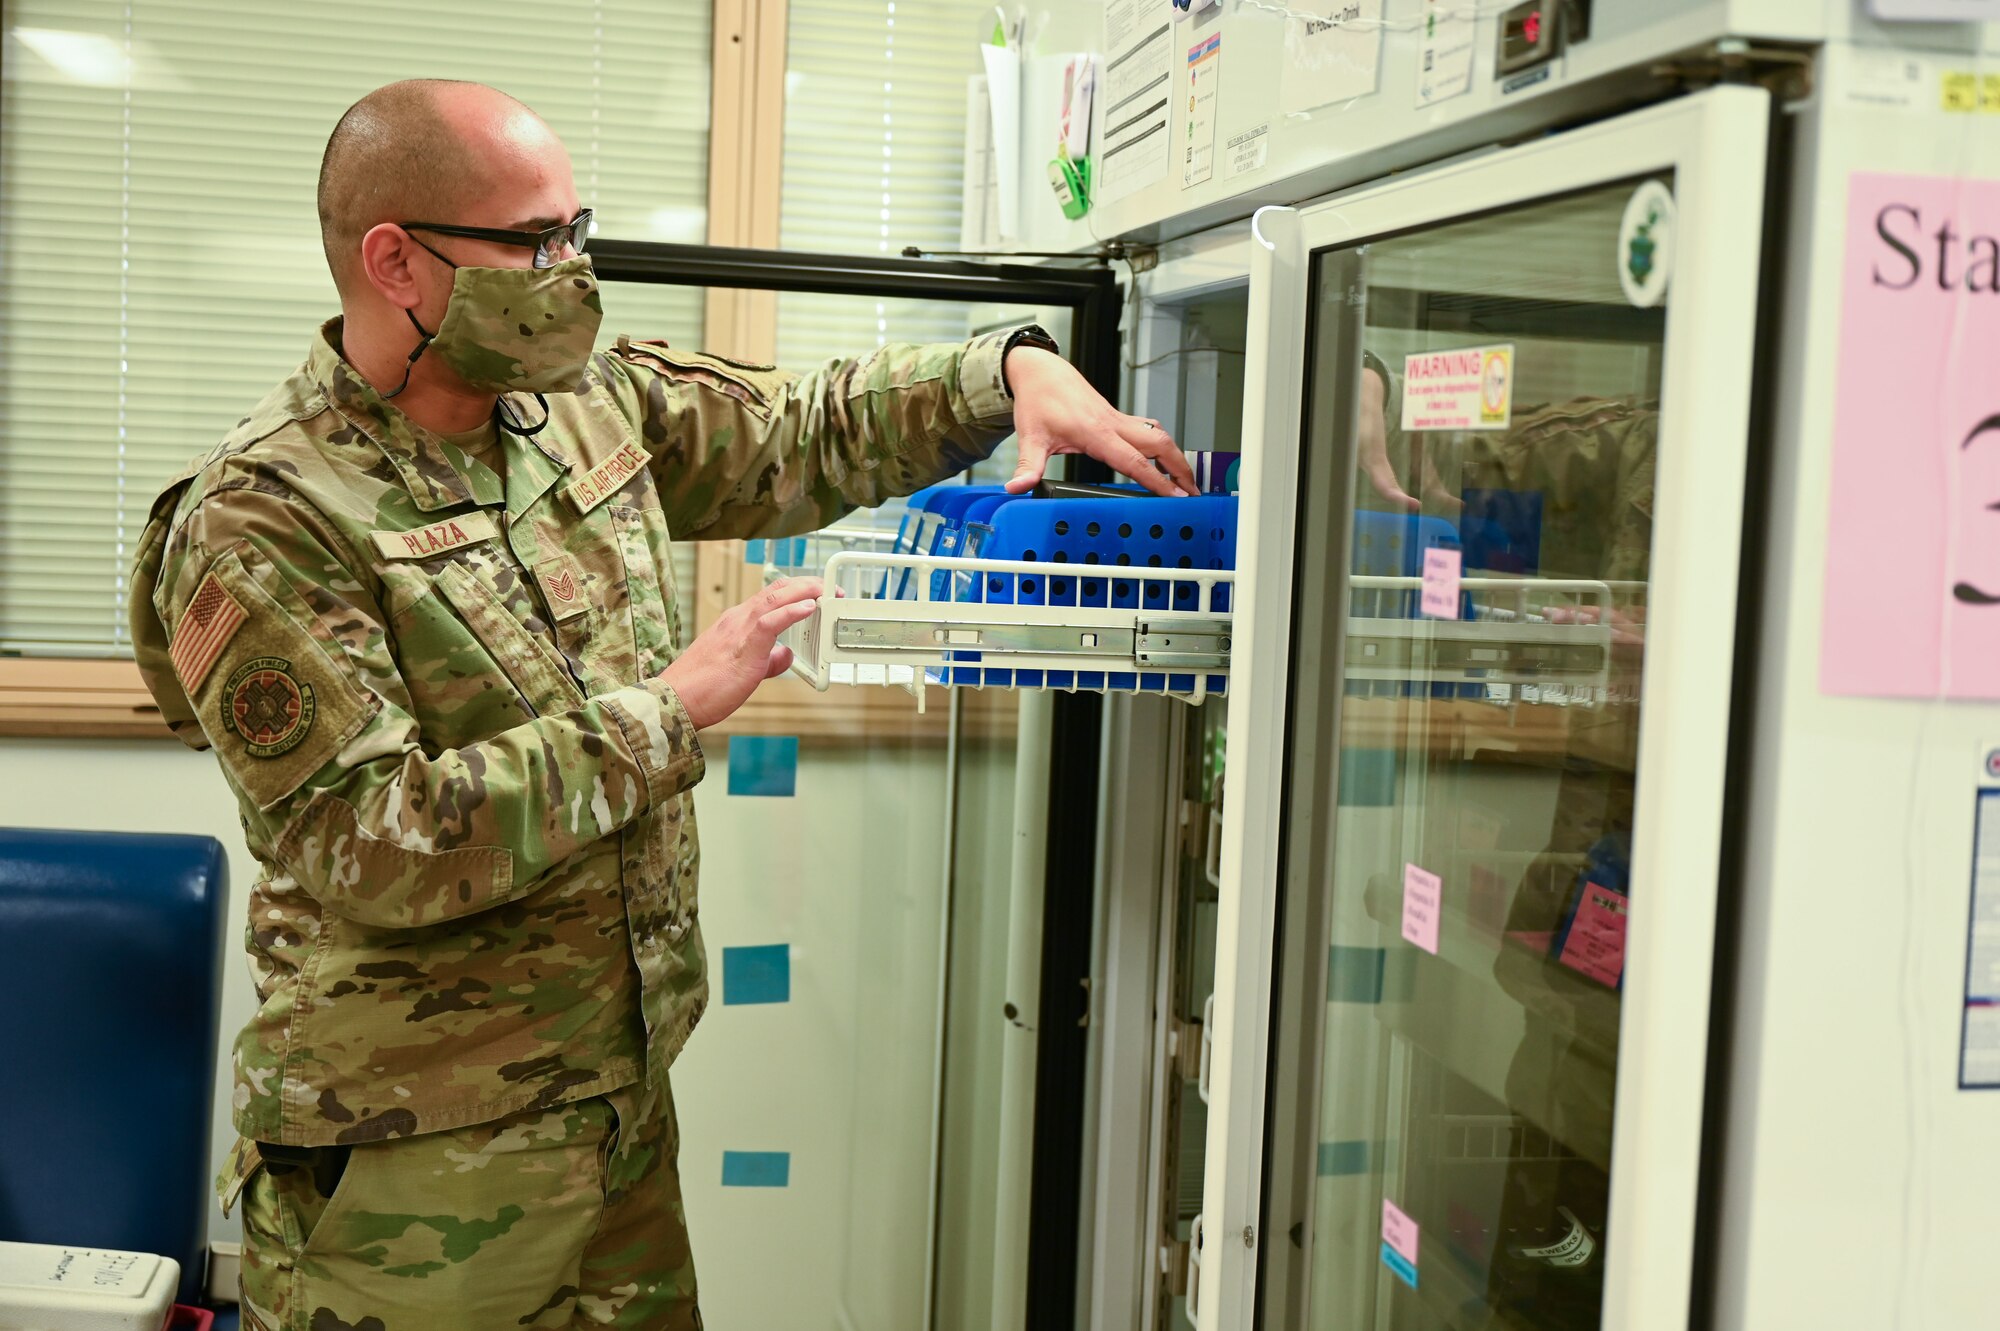 A man retrieves medicine from a refrigerator.